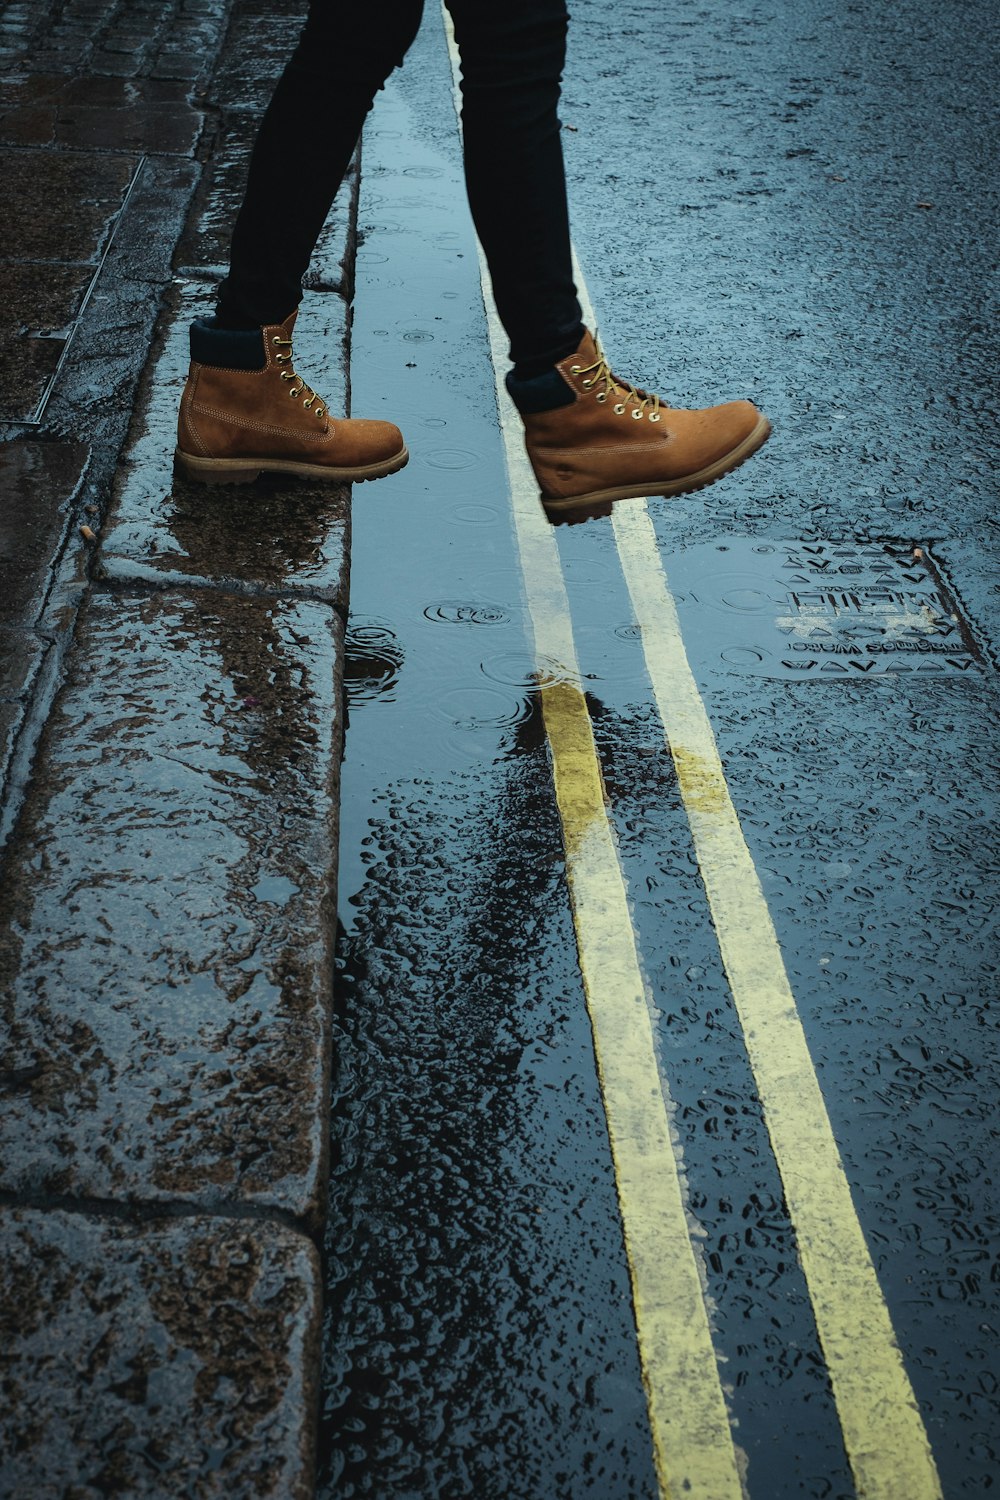 Persona che indossa stivali marroni che cammina su una strada bagnata